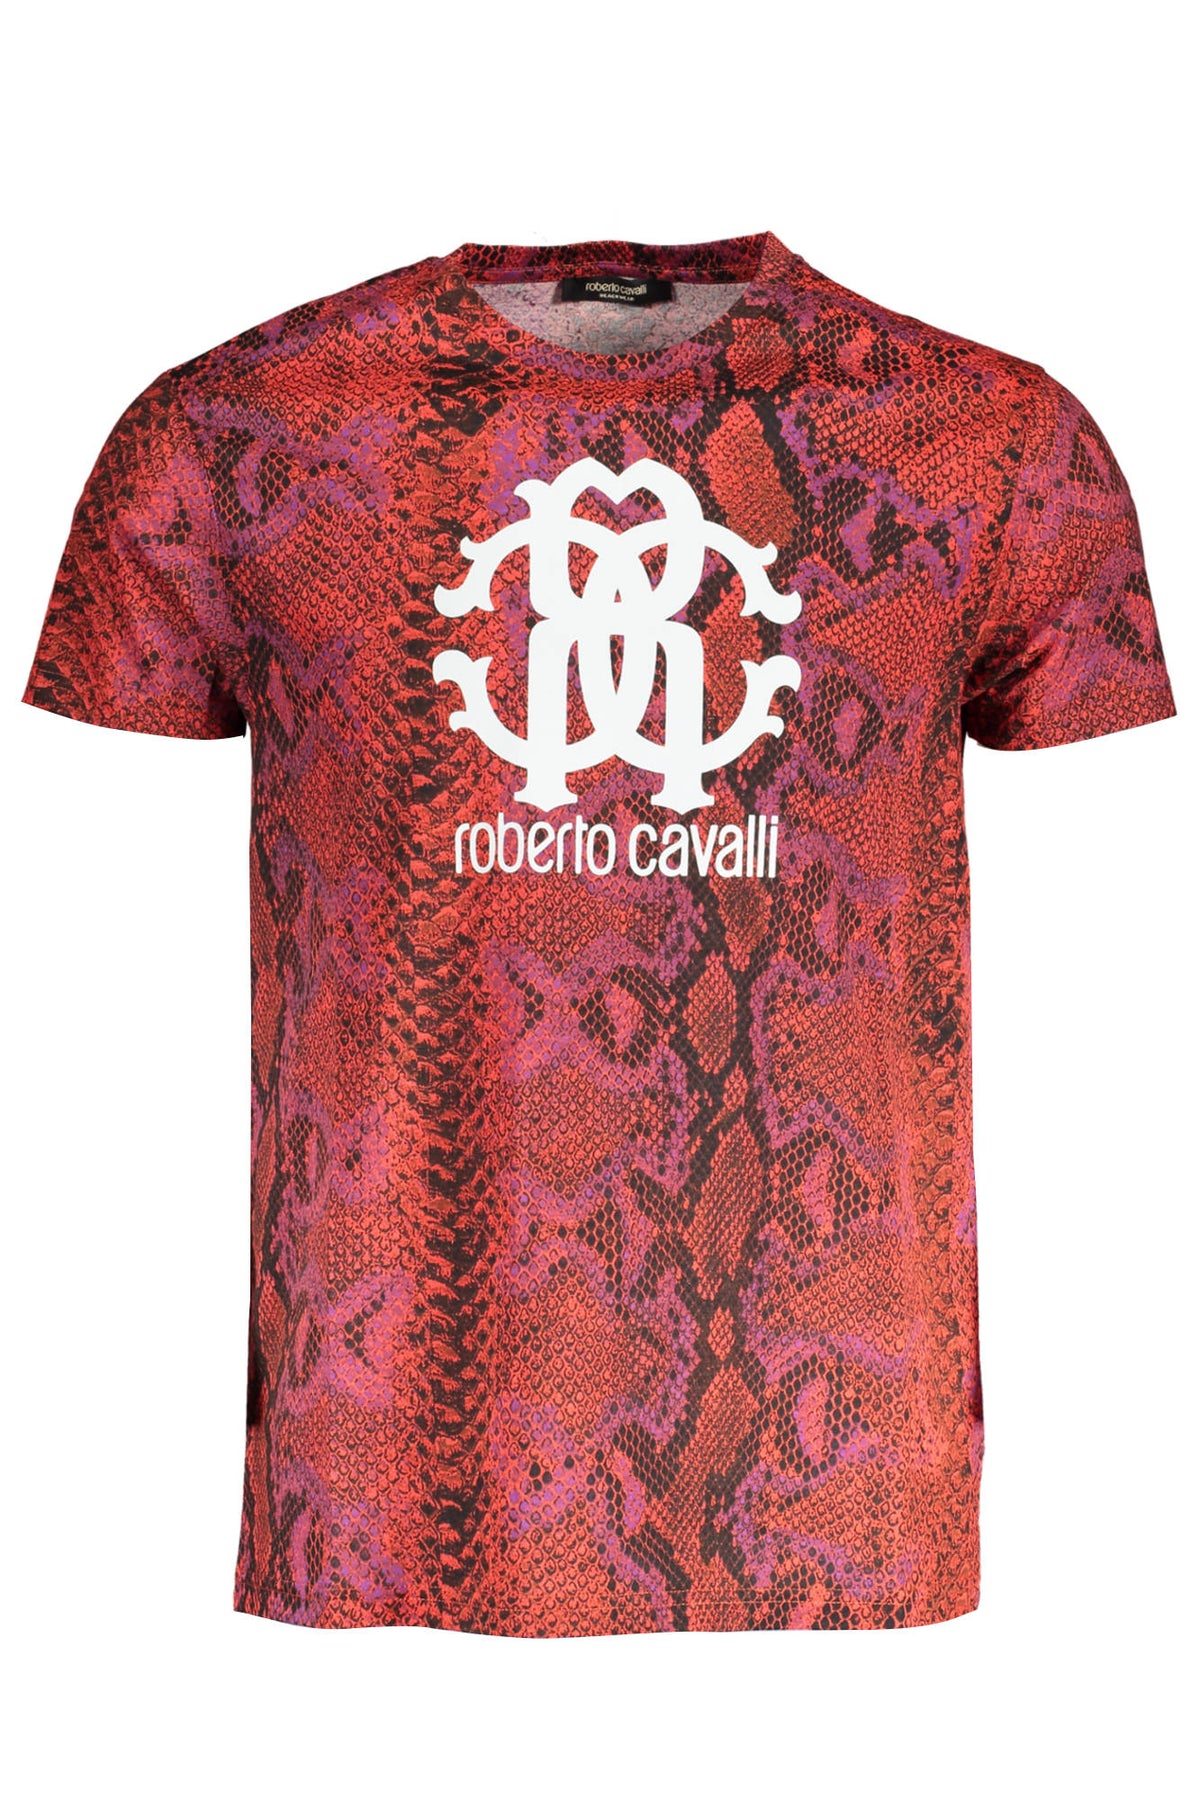 Roberto Cavalli Herren T-Shirt Sweatshirt mit Rundhalsausschnitt, kurzarm